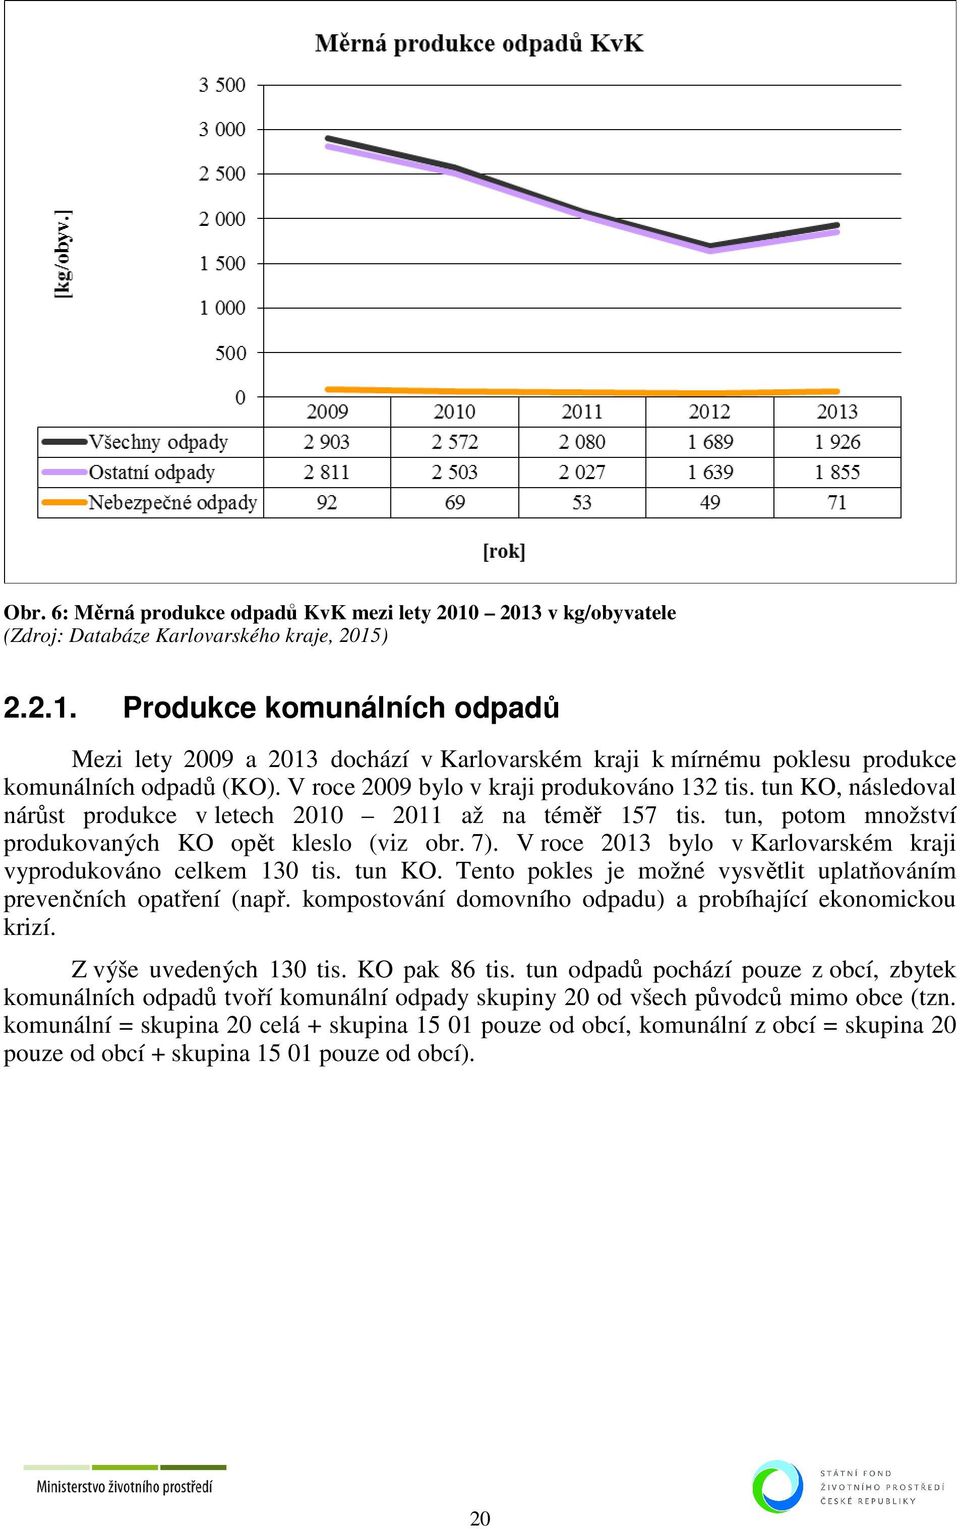 V roce 2013 bylo v Karlovarském kraji vyprodukováno celkem 130 tis. tun KO. Tento pokles je možné vysvětlit uplatňováním prevenčních opatření (např.